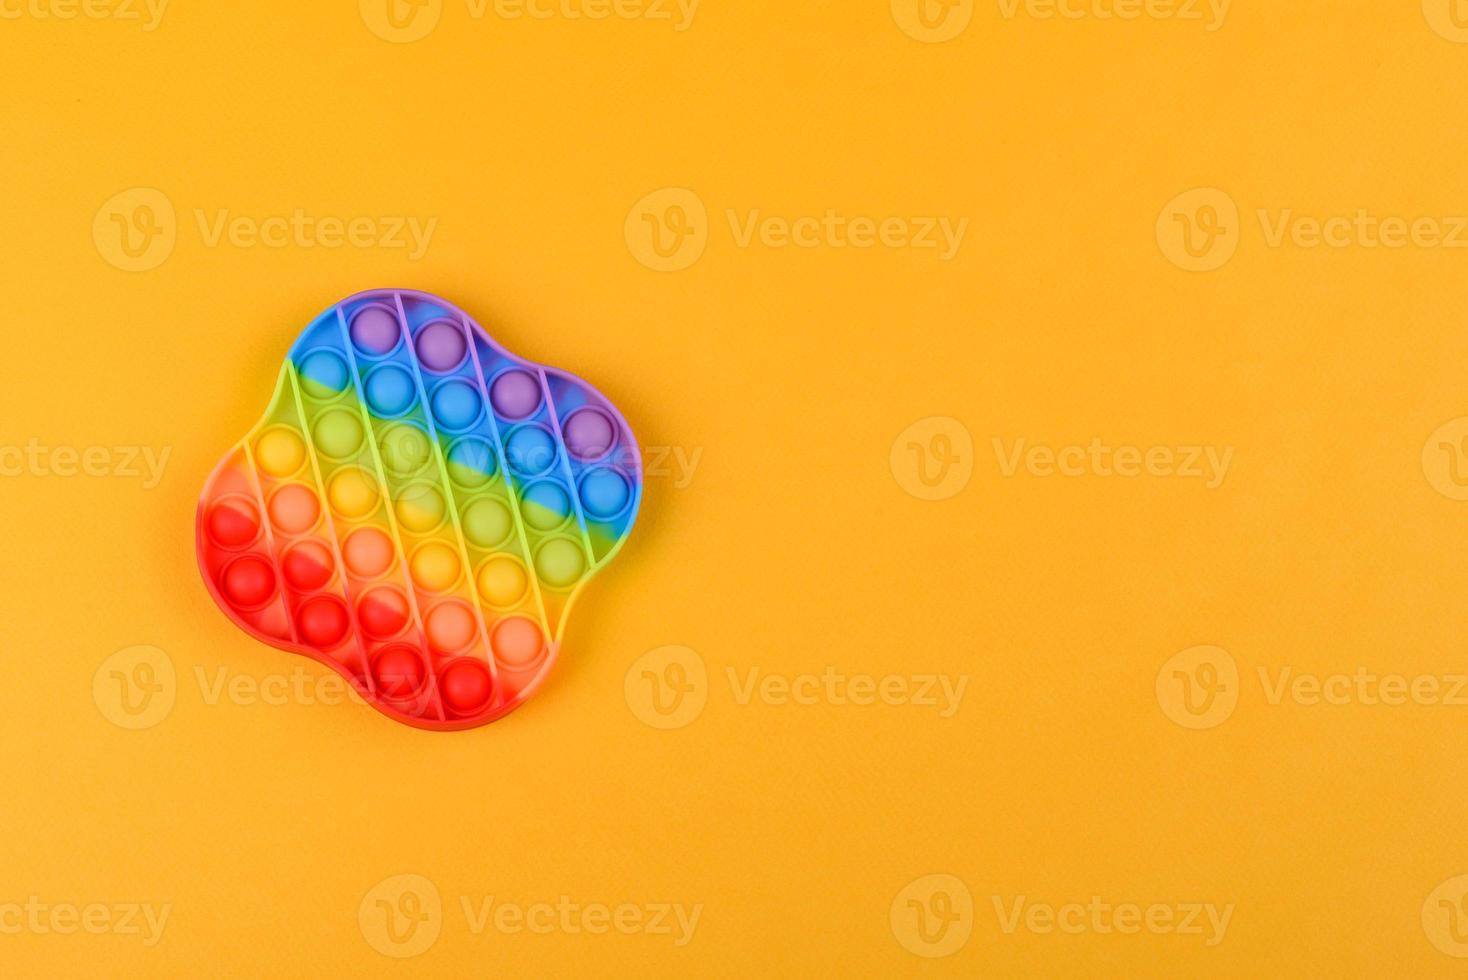 Brinquedo infantil colorido brilhante feito de silicone projetado para aliviar o estresse foto